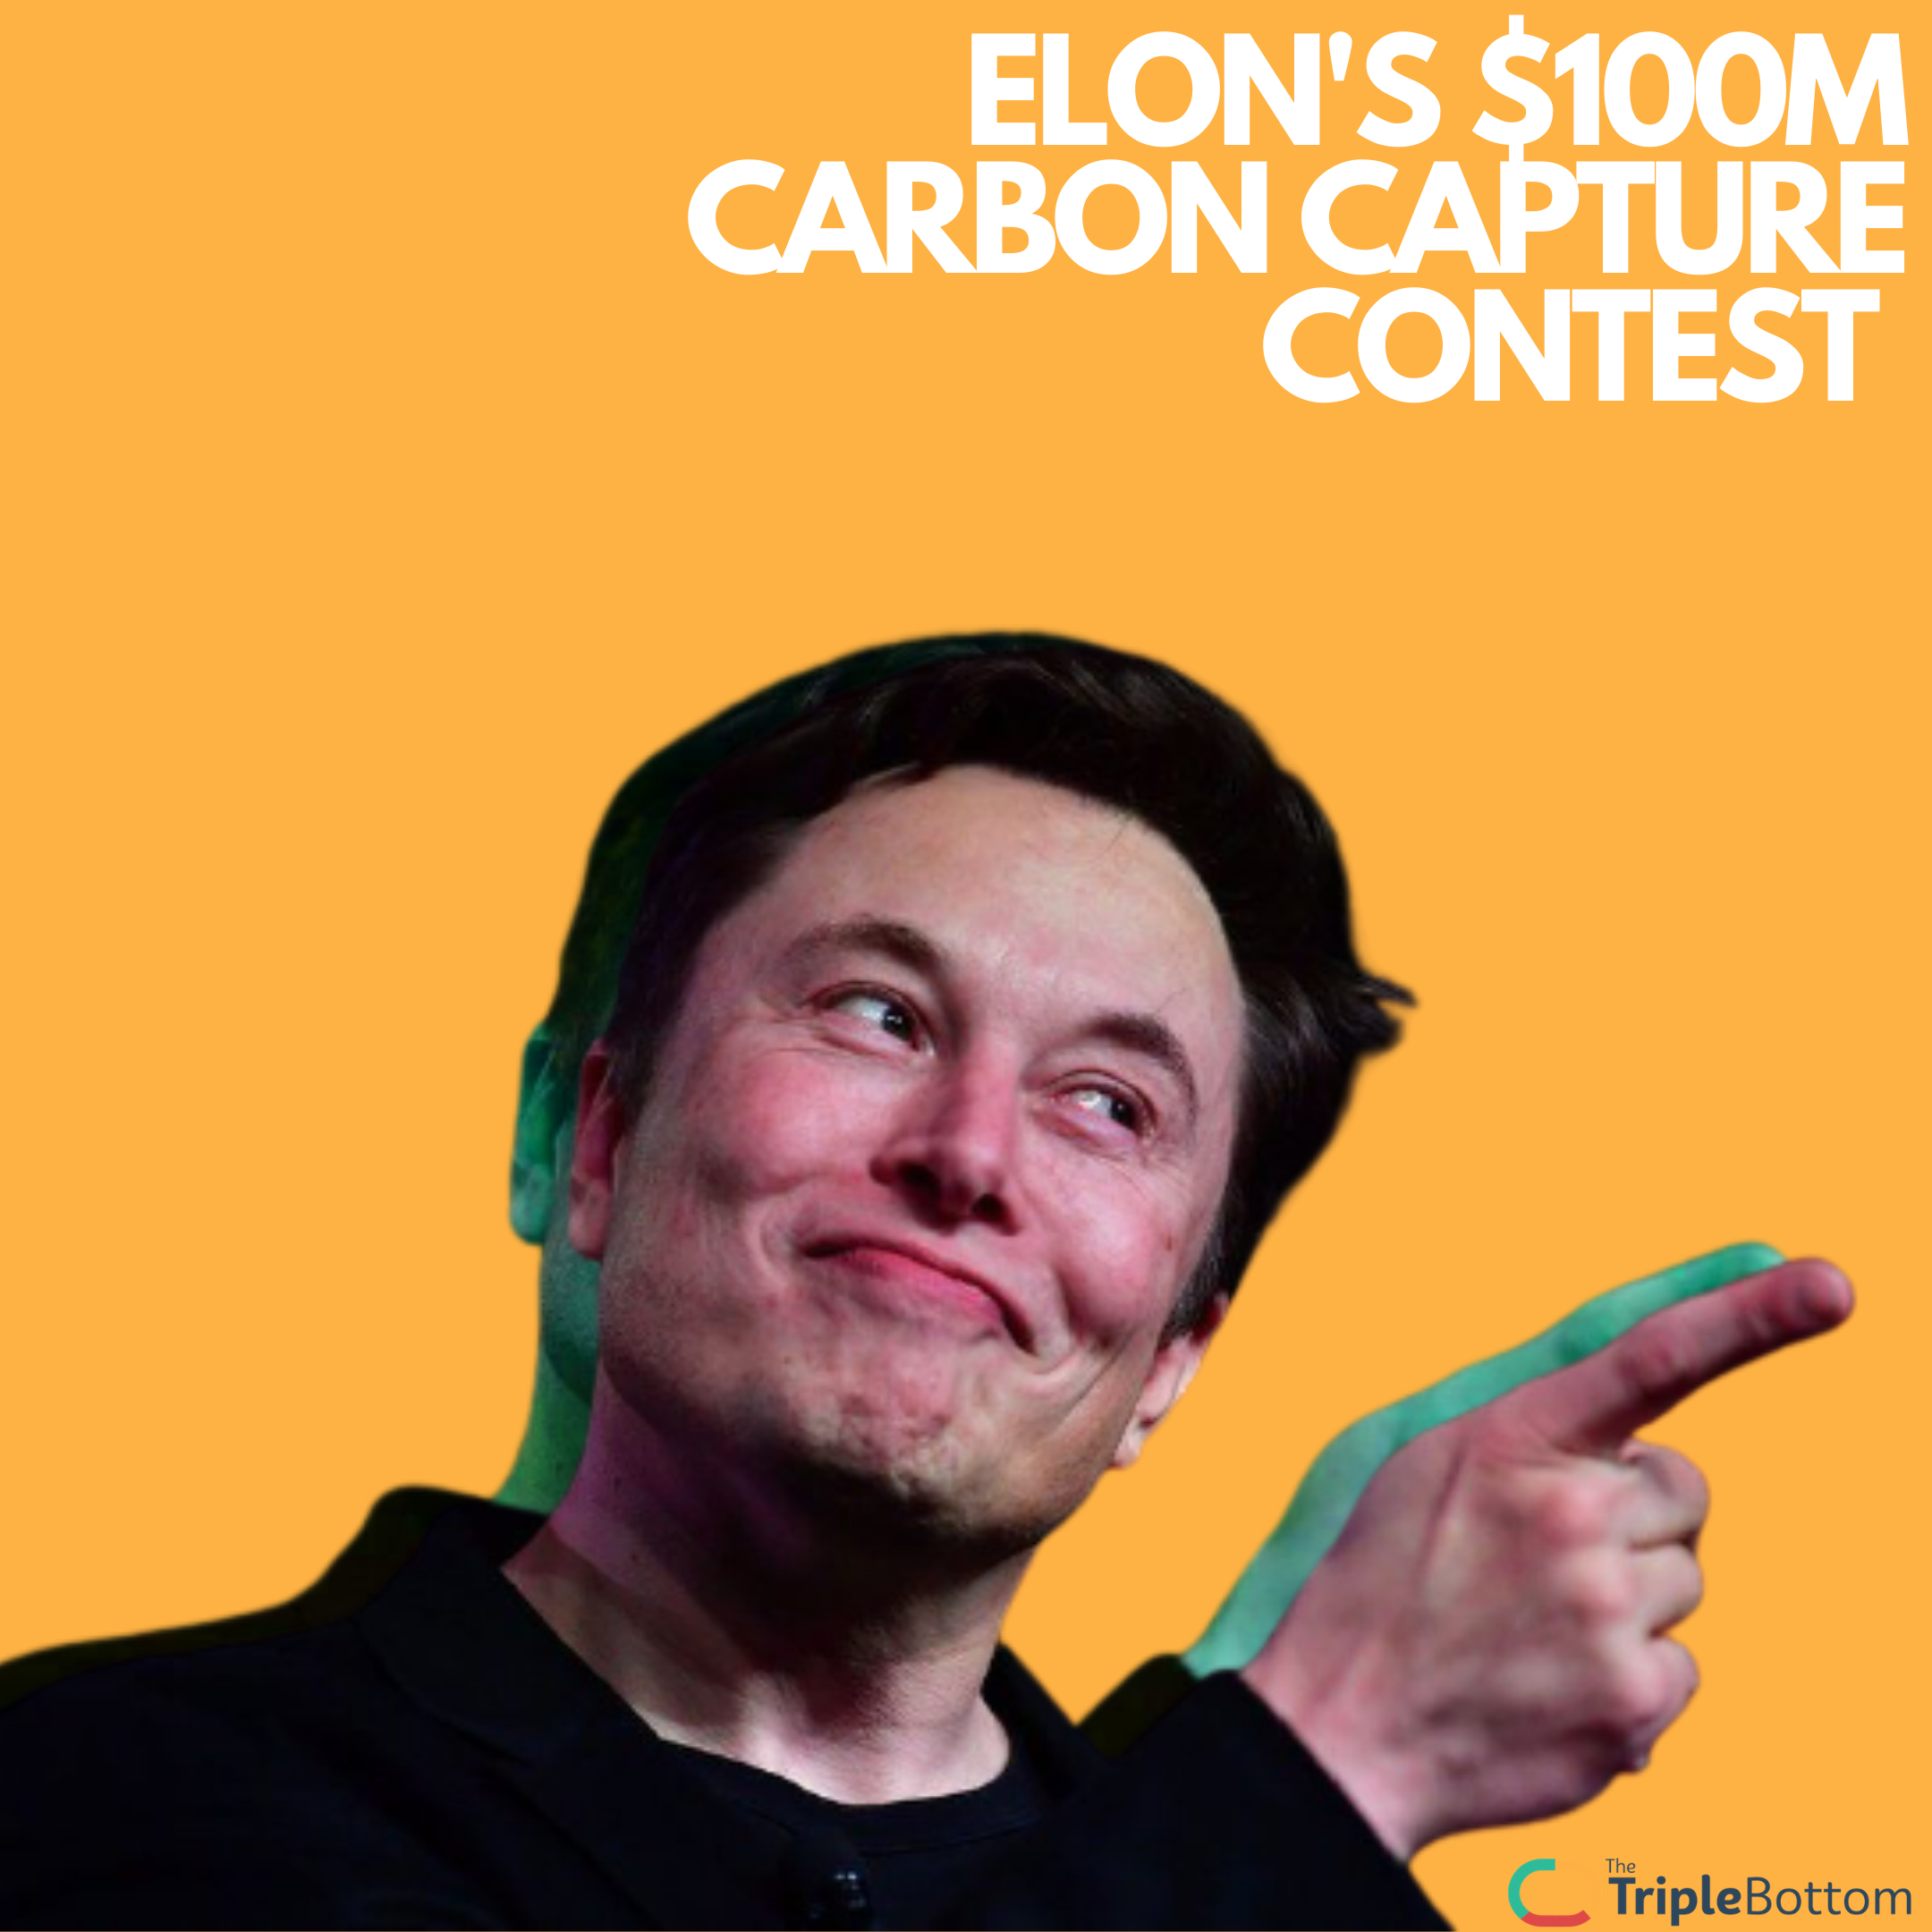 Elon’s $100M Carbon Capture Contest